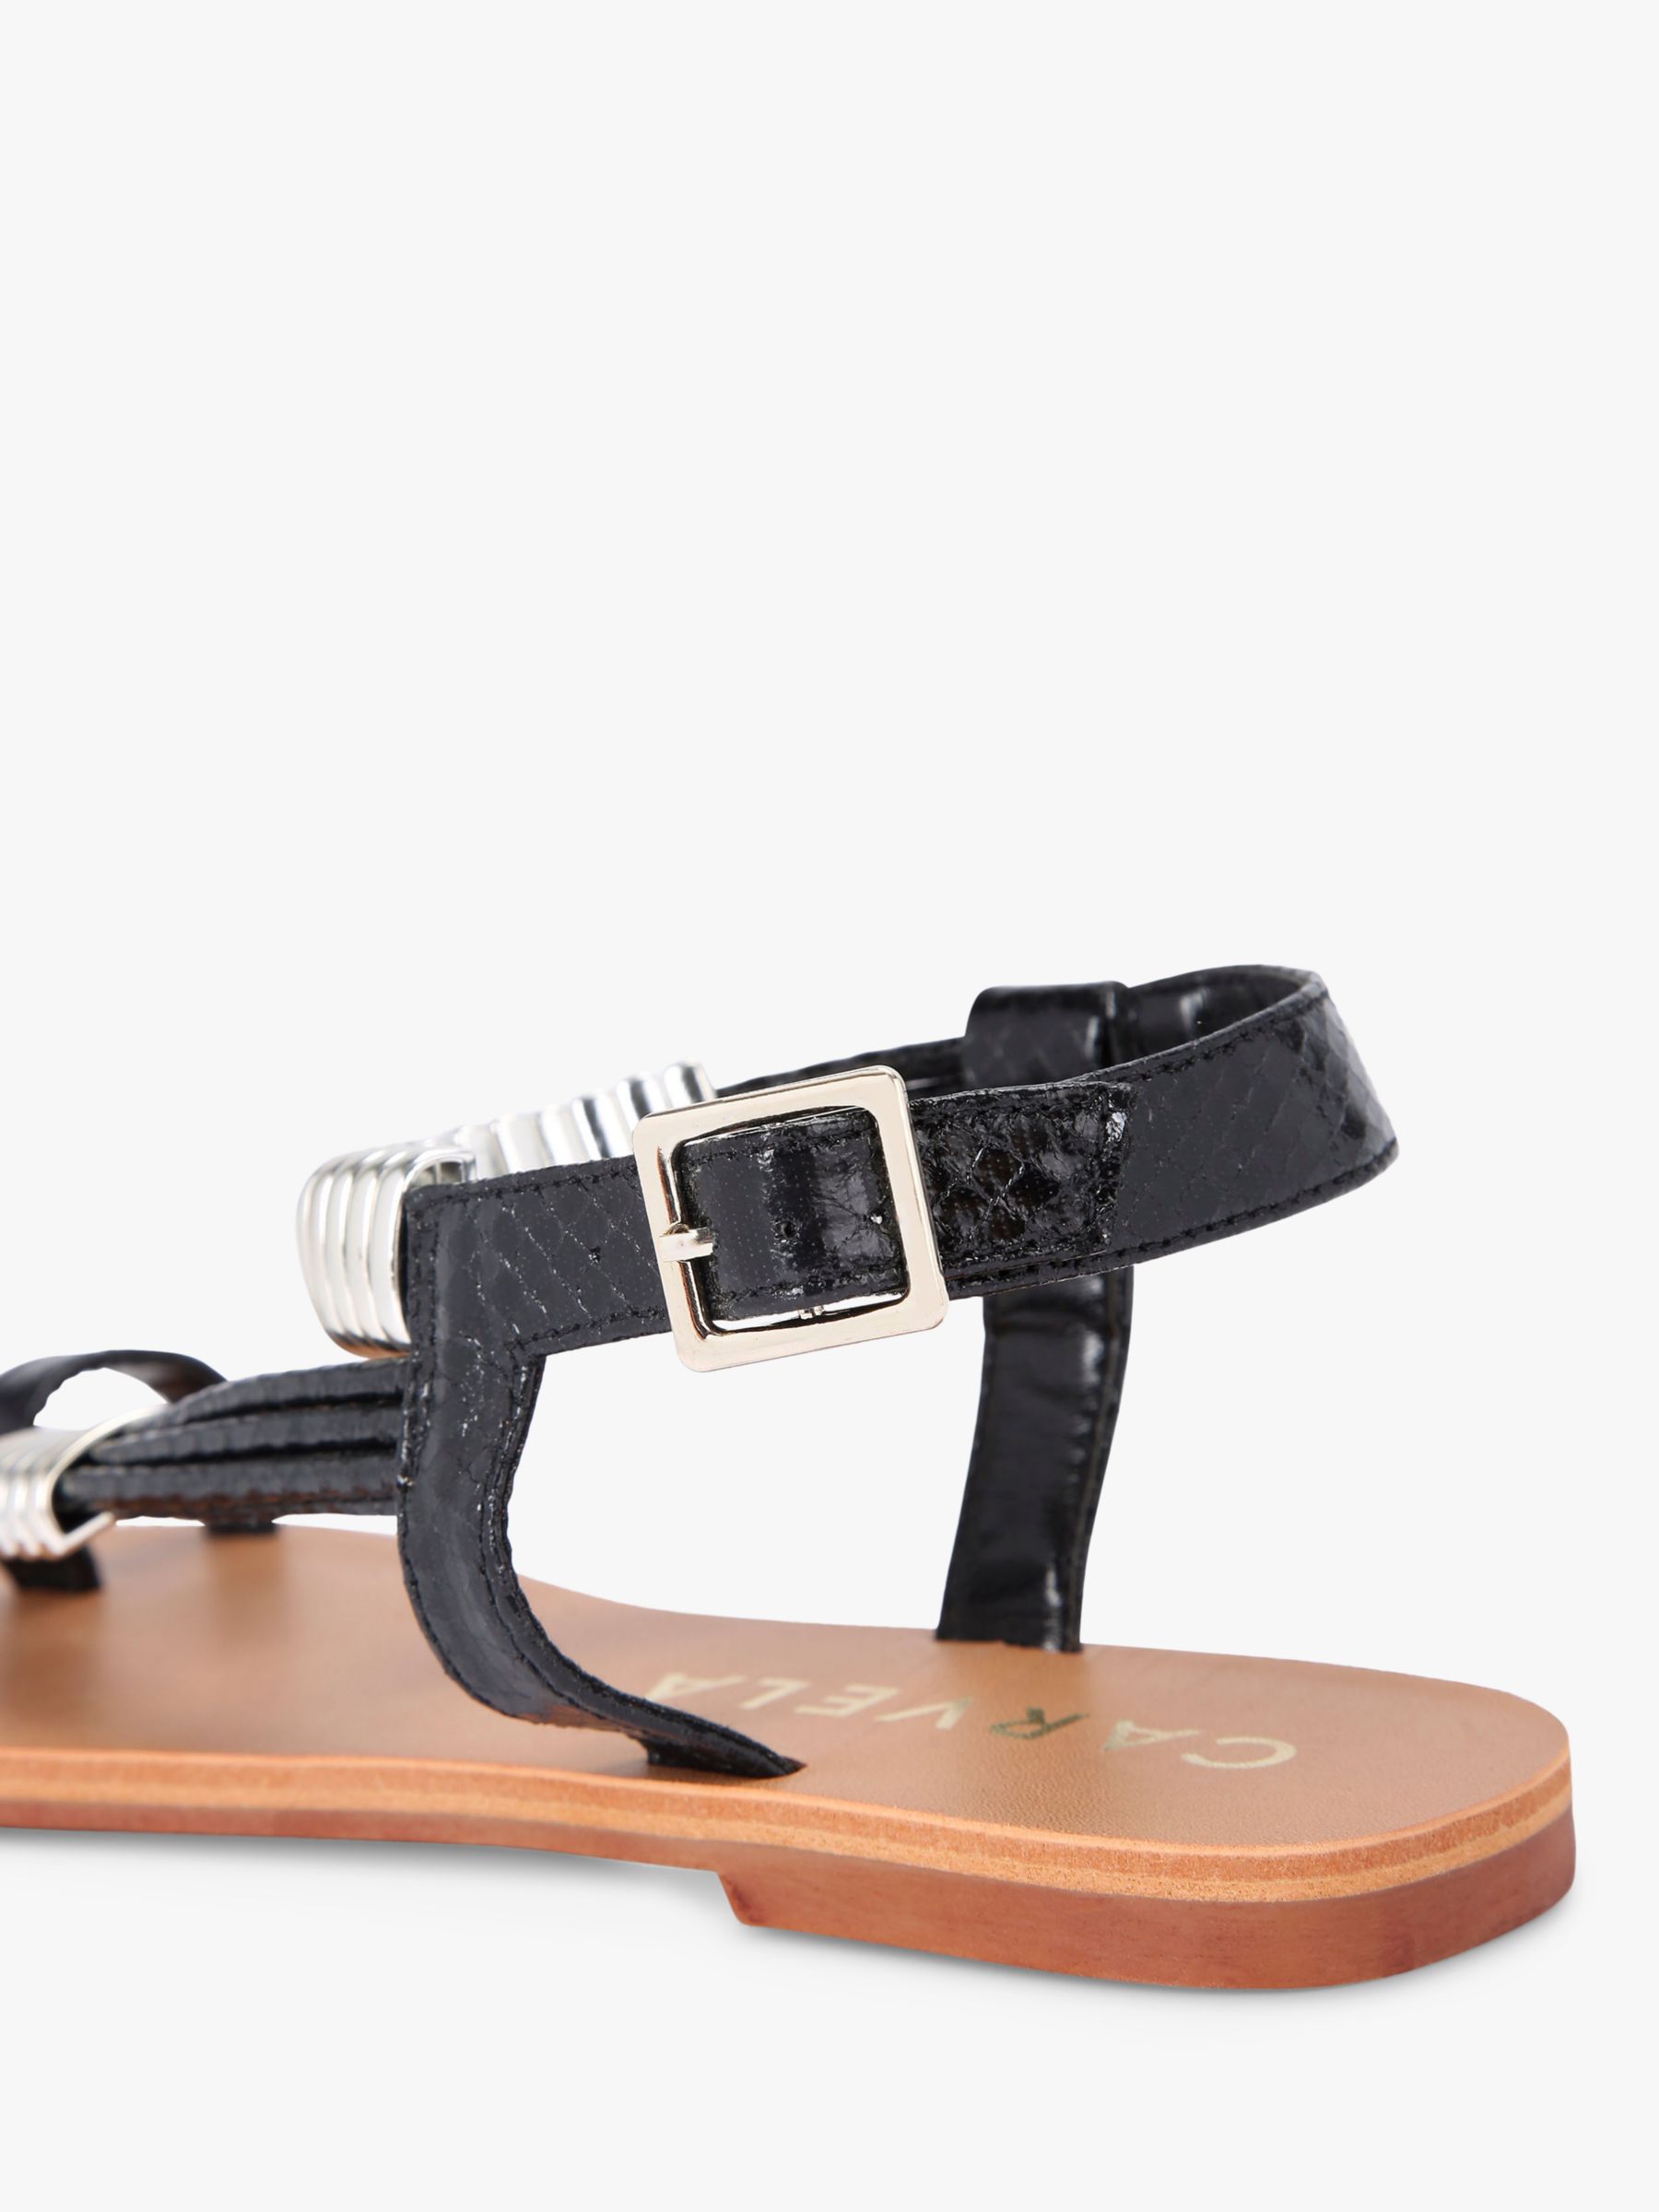 Buy Carvela Klipper Flat Sandals Online at johnlewis.com